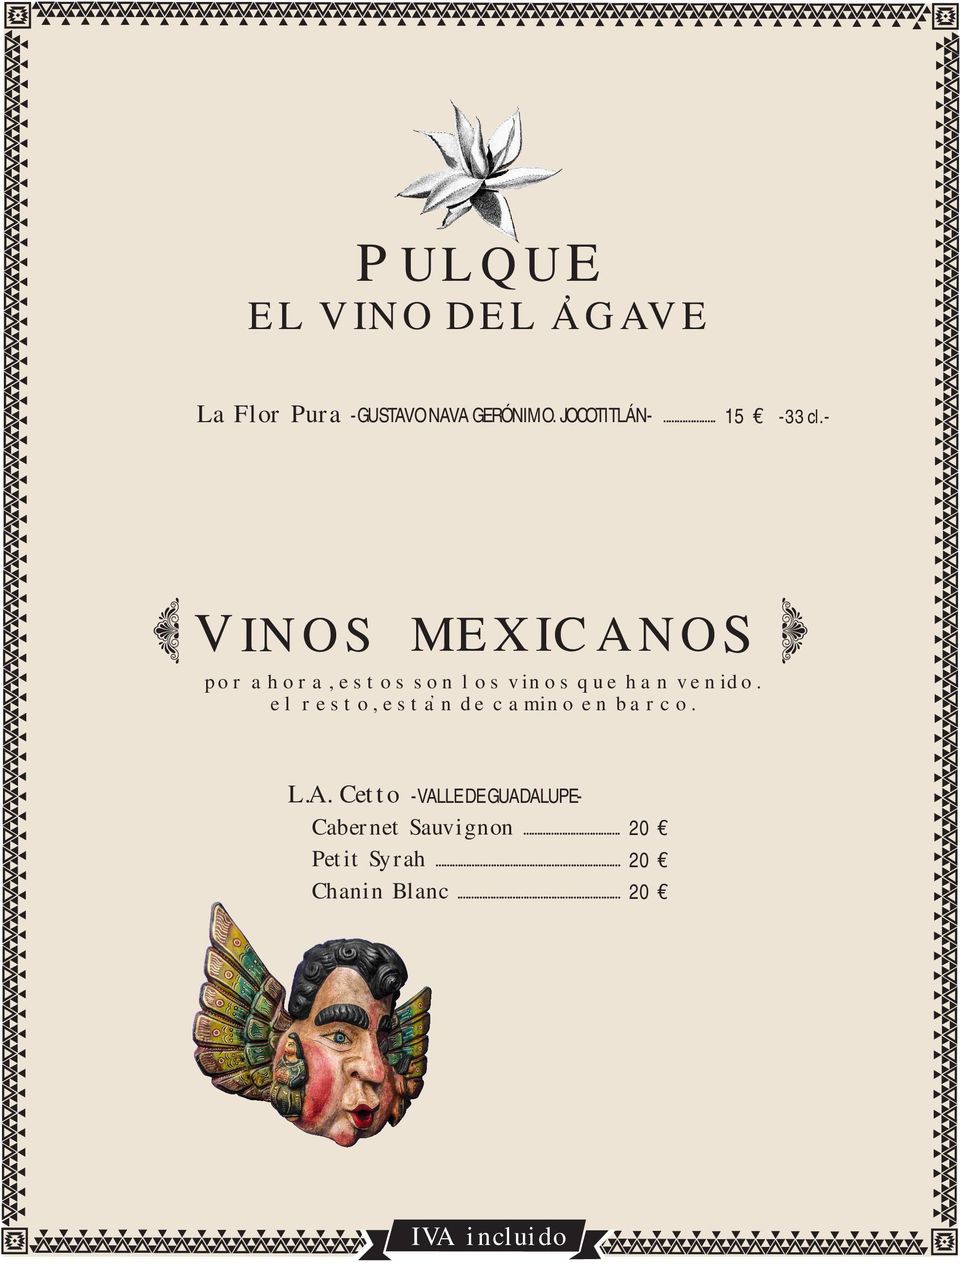 - VINOS MEXICANOS por ahora, estos son los vinos que han venido.